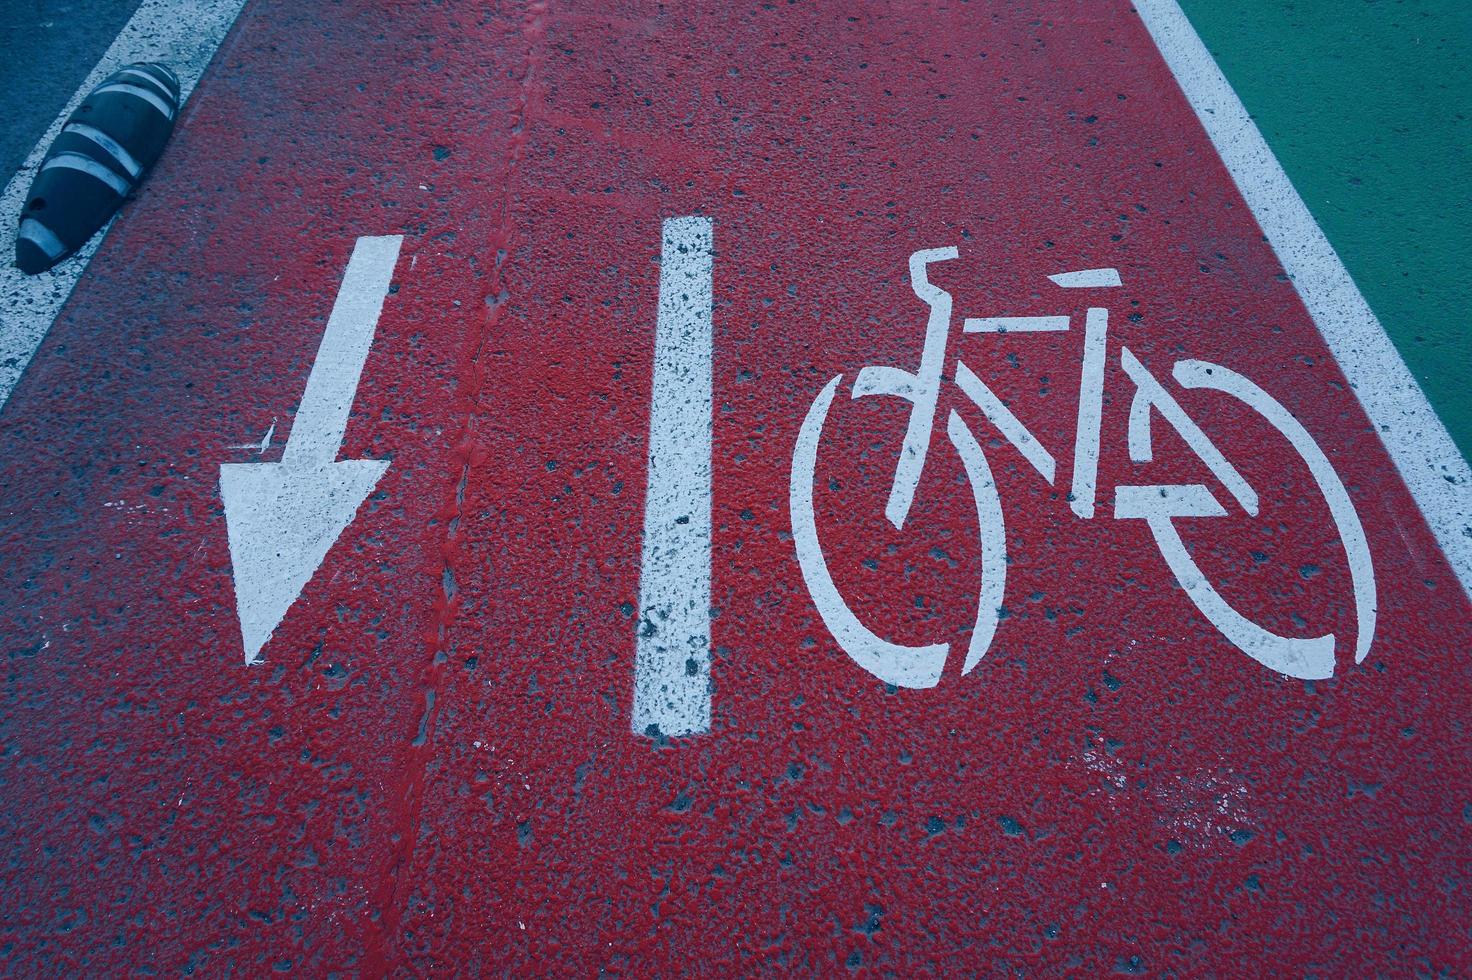 Una señal de tráfico de bicicletas en la ciudad de Bilbao, España. foto